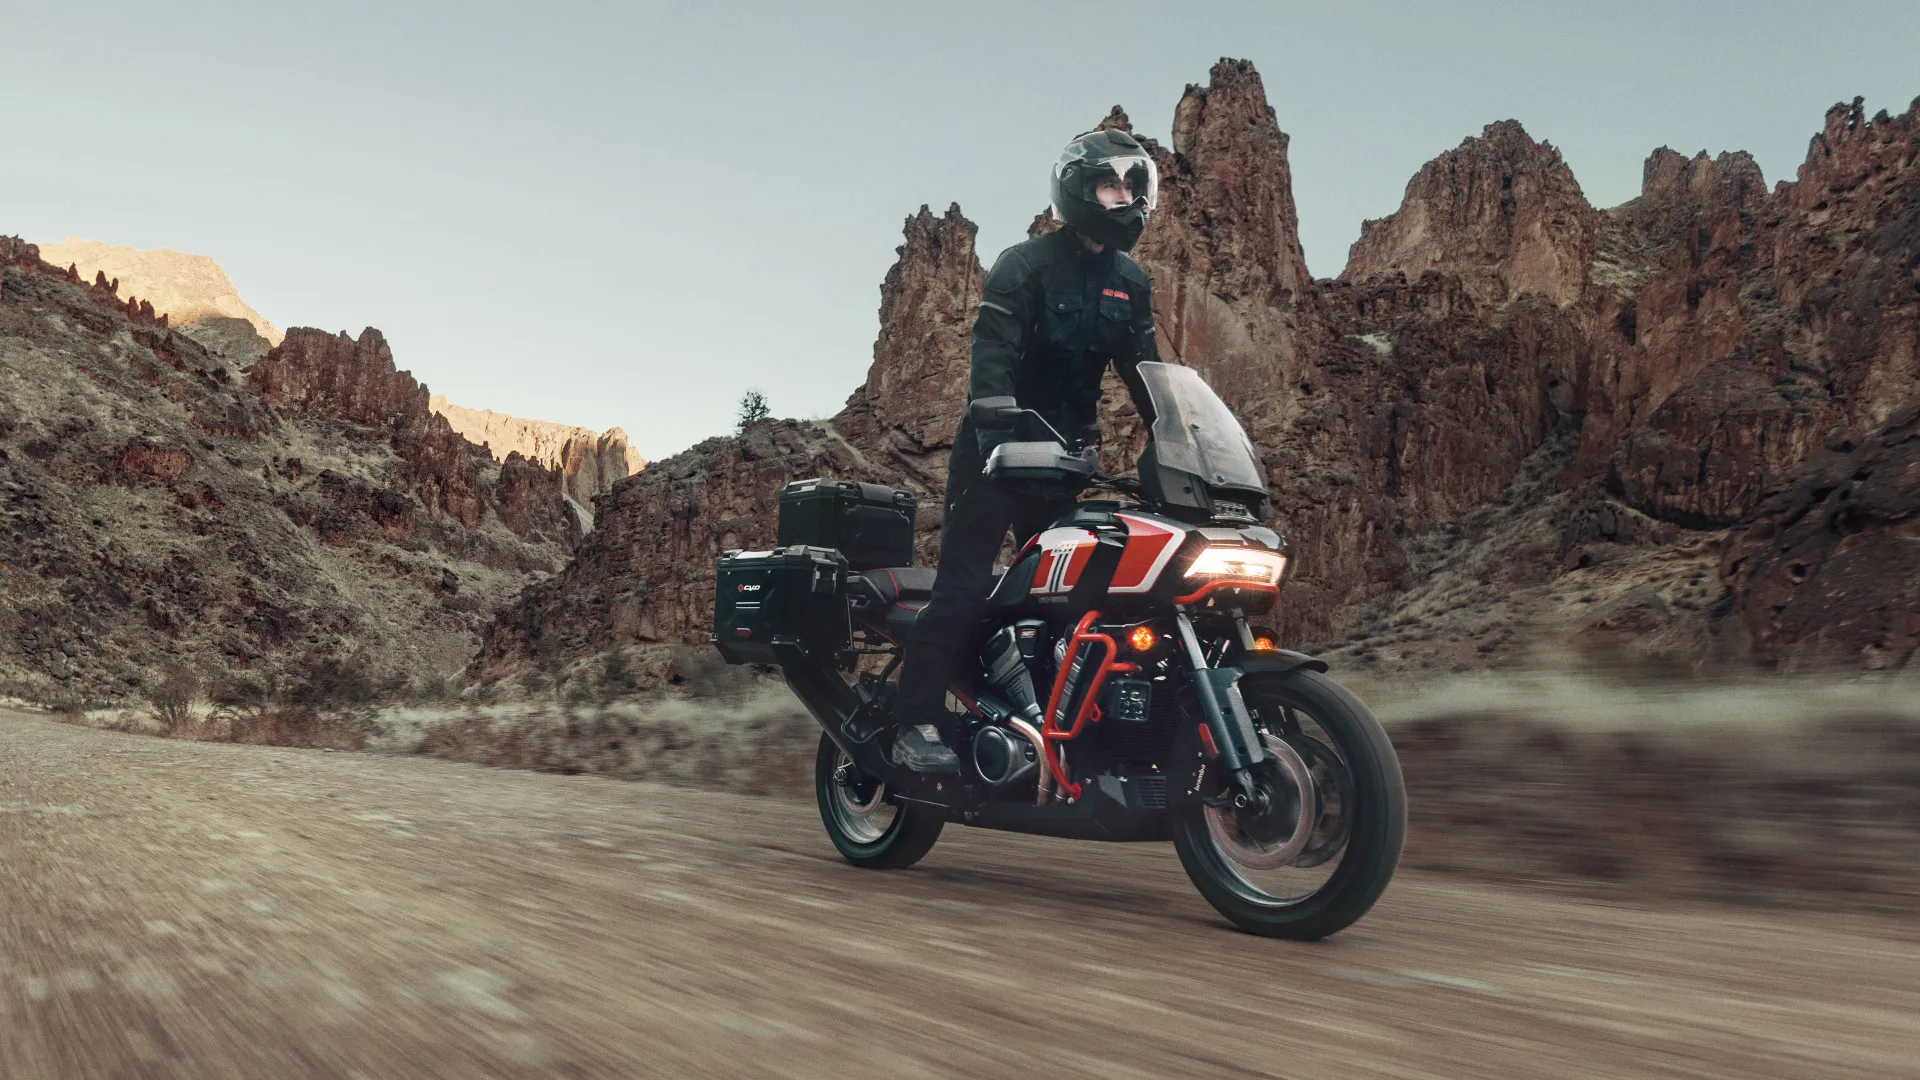 Si quieres una trail que se salga de lo común, la Harley-Davidson Pan America CVO puede ser tu elección